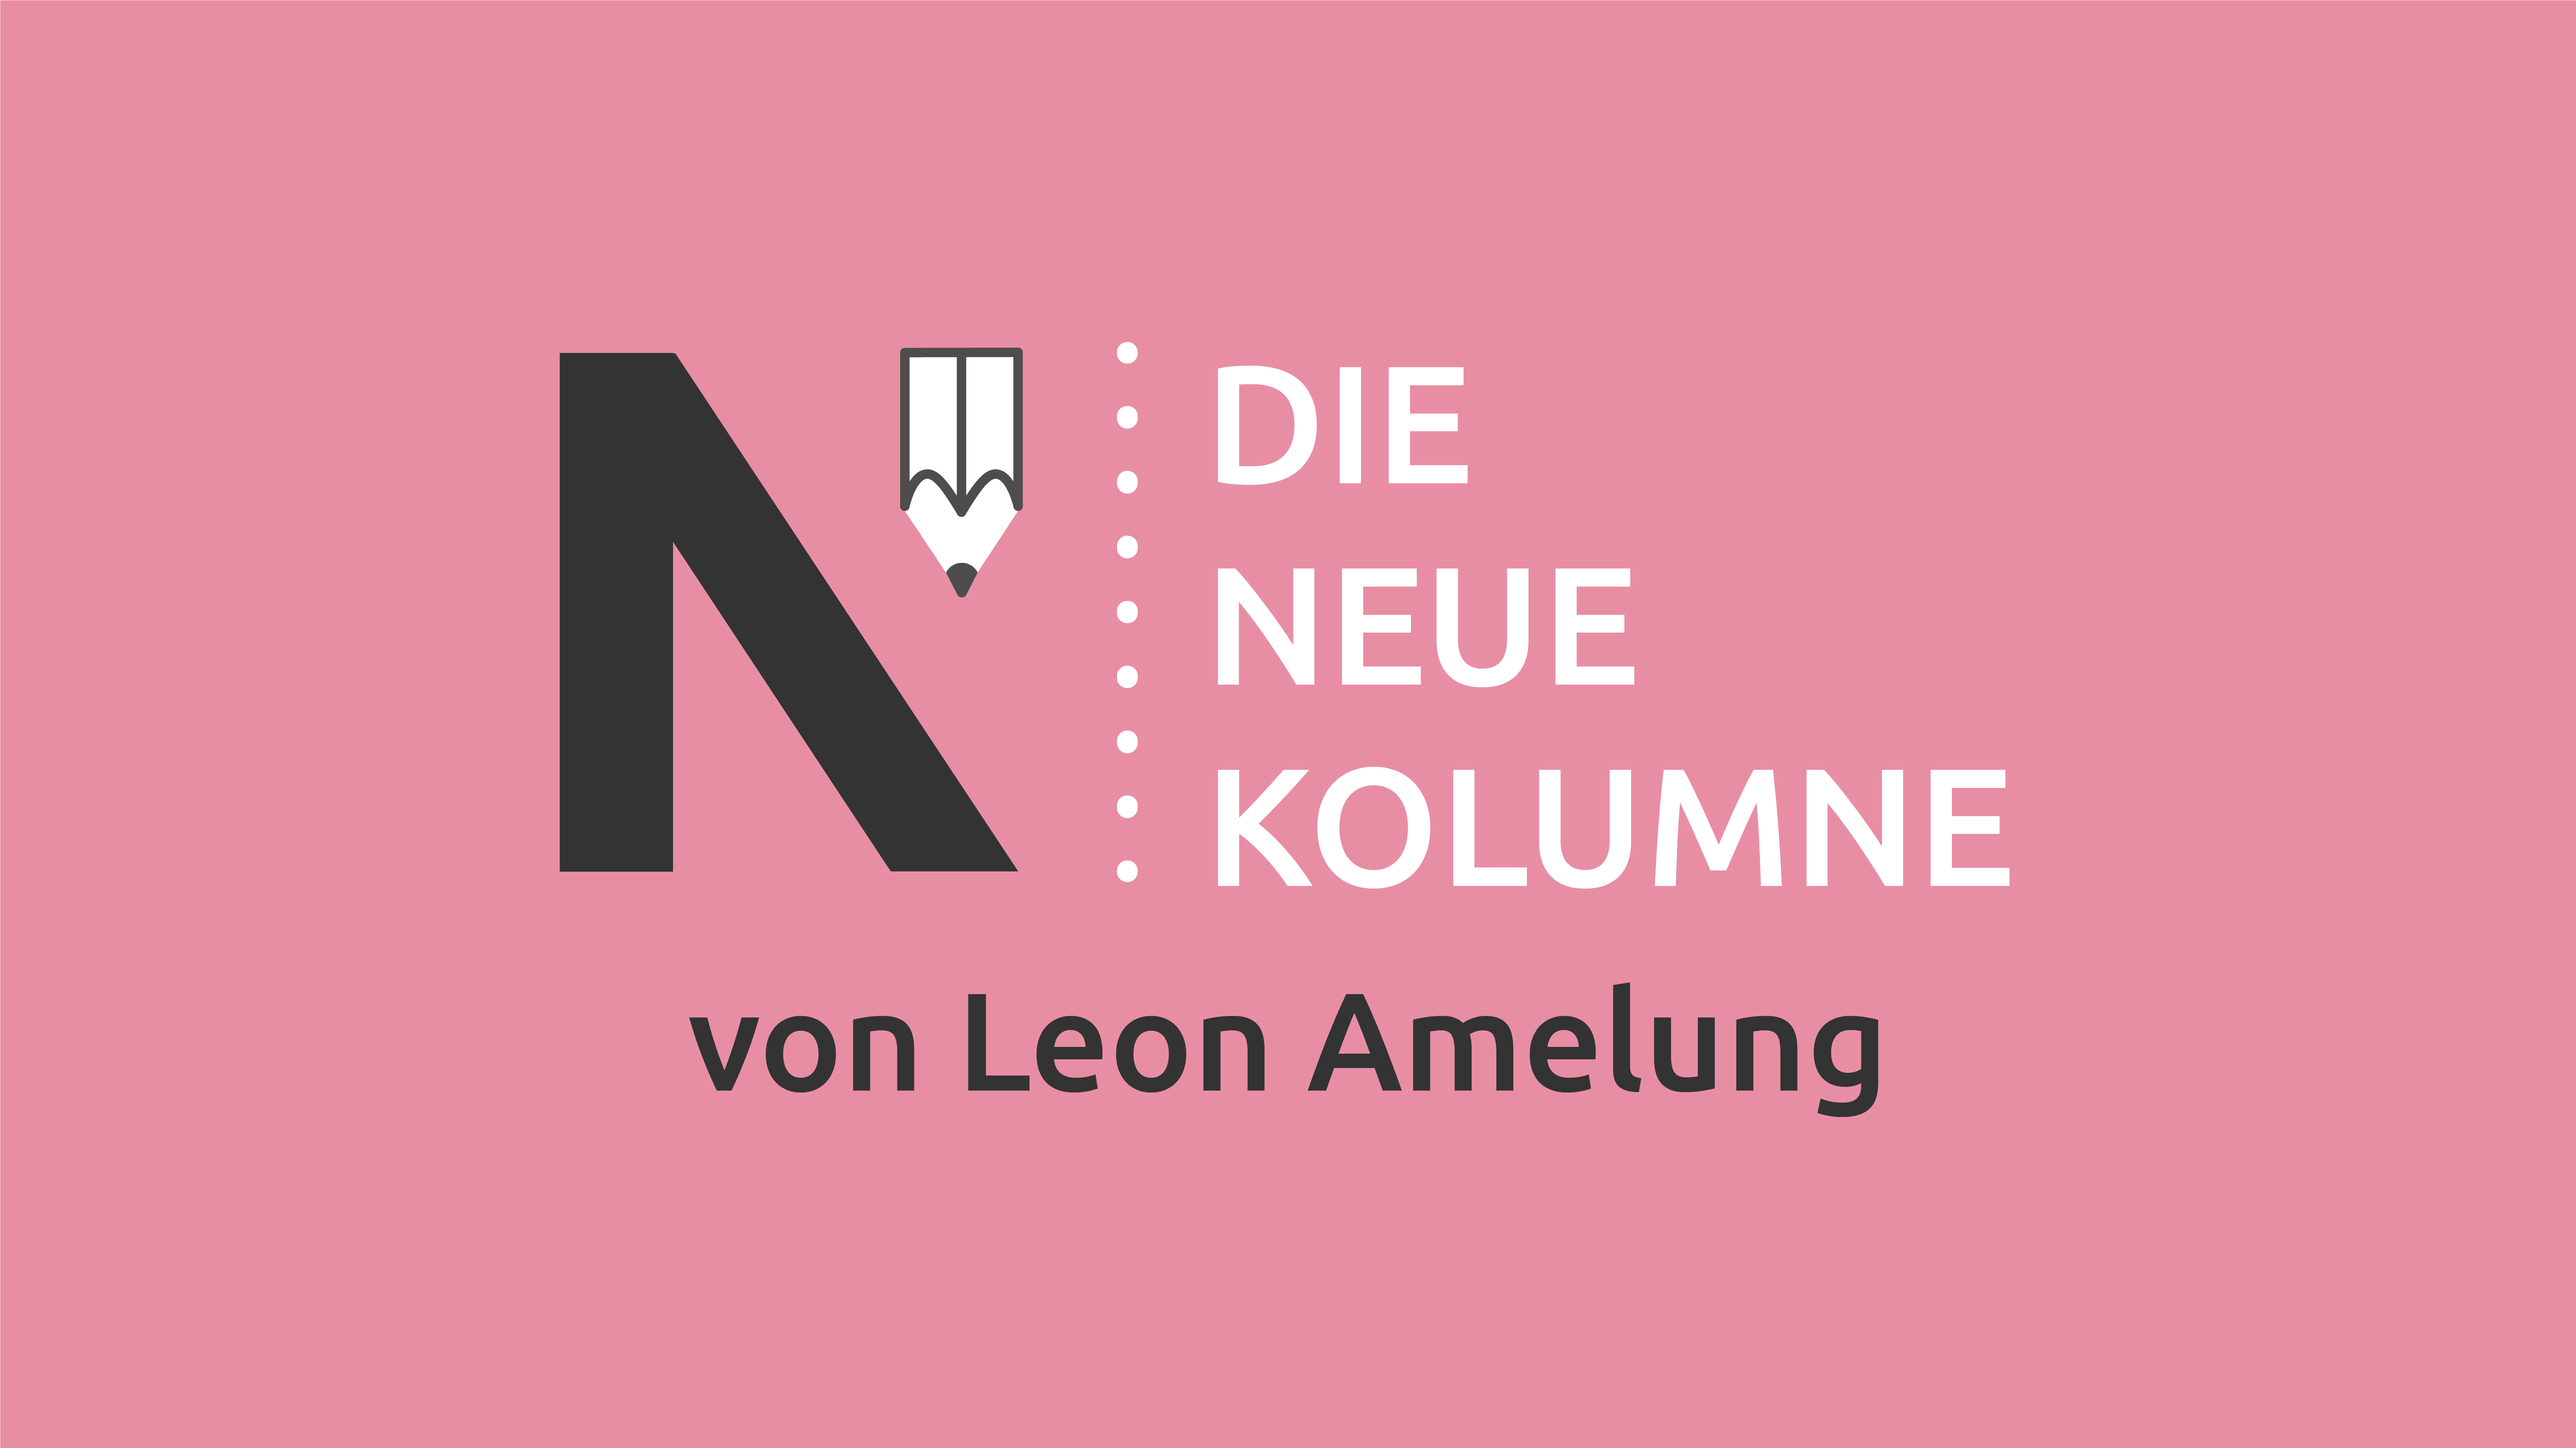 Das Logo von die neue Norm auf rosa Grund. Rechts davon steht: Die Neue Kolumne. Unten steht: Von Leon Amelung.